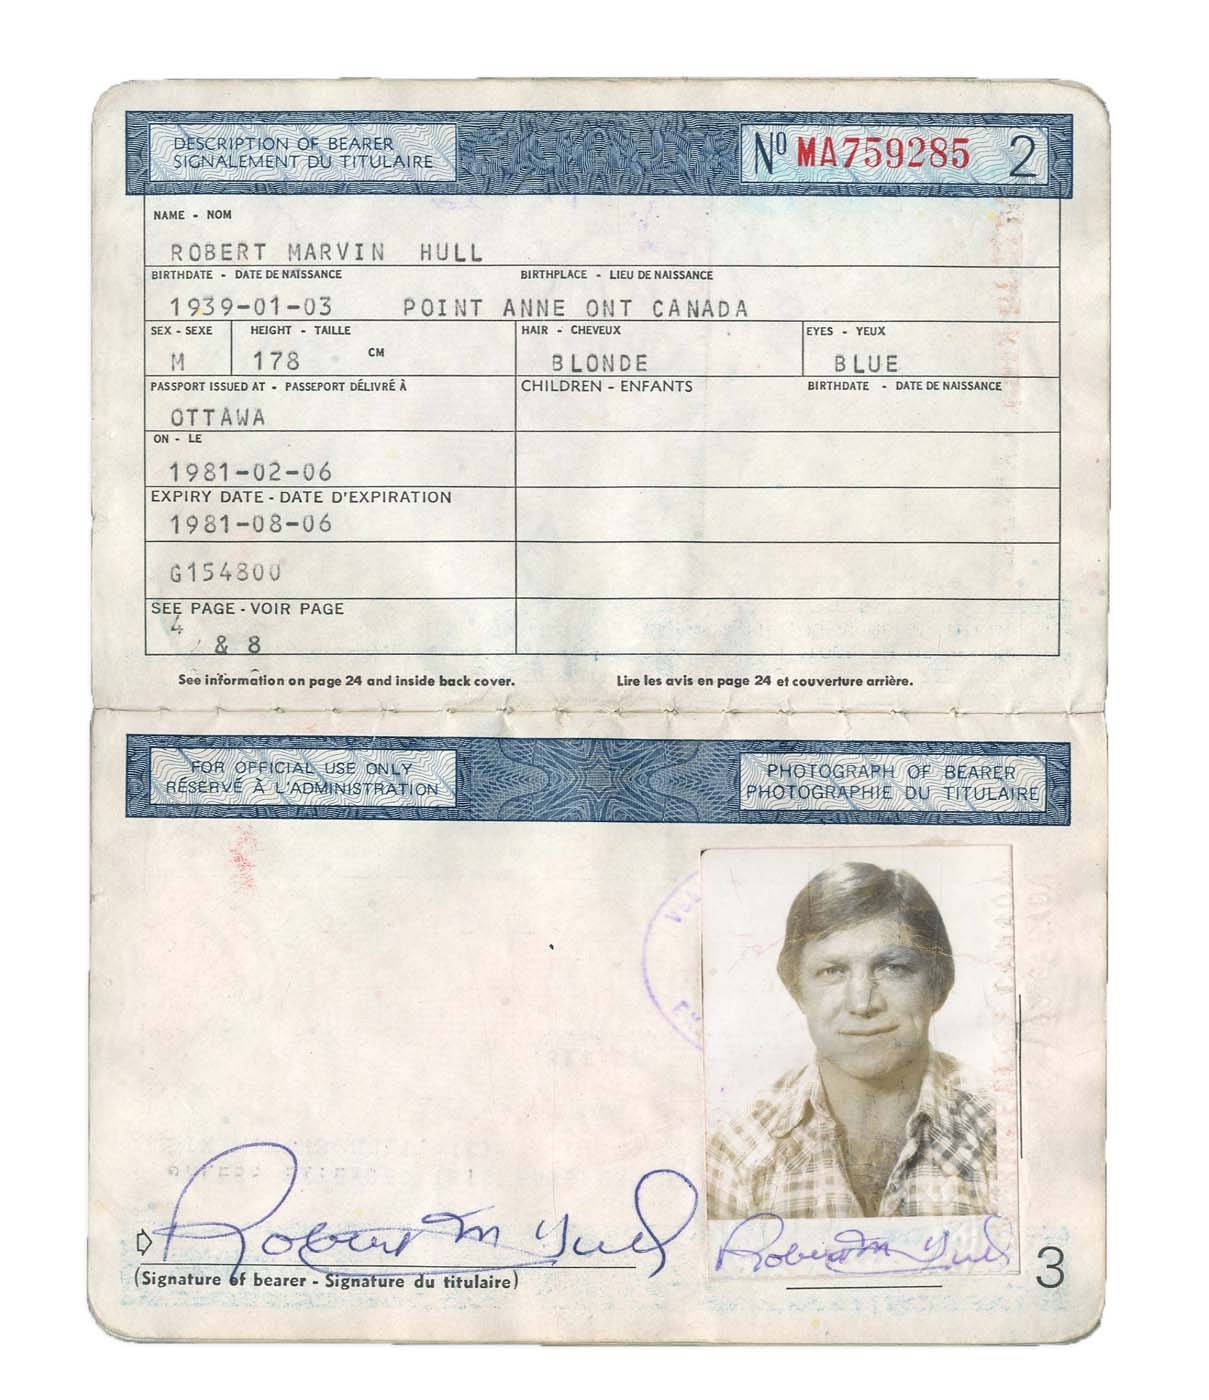 Bobby Hull's Canadian Passport